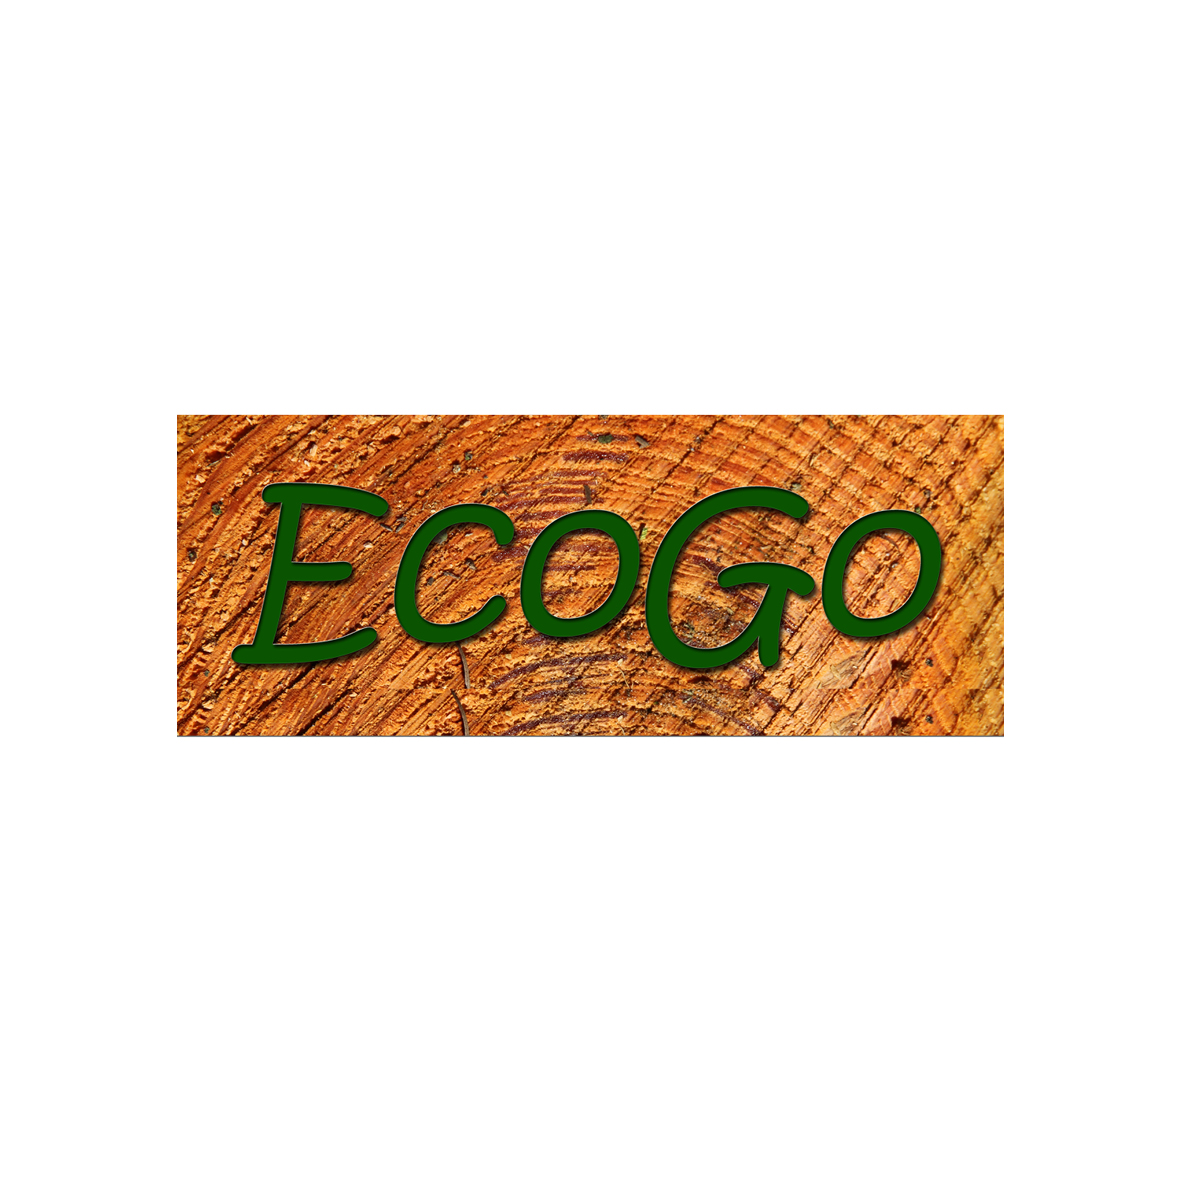 Ecogo